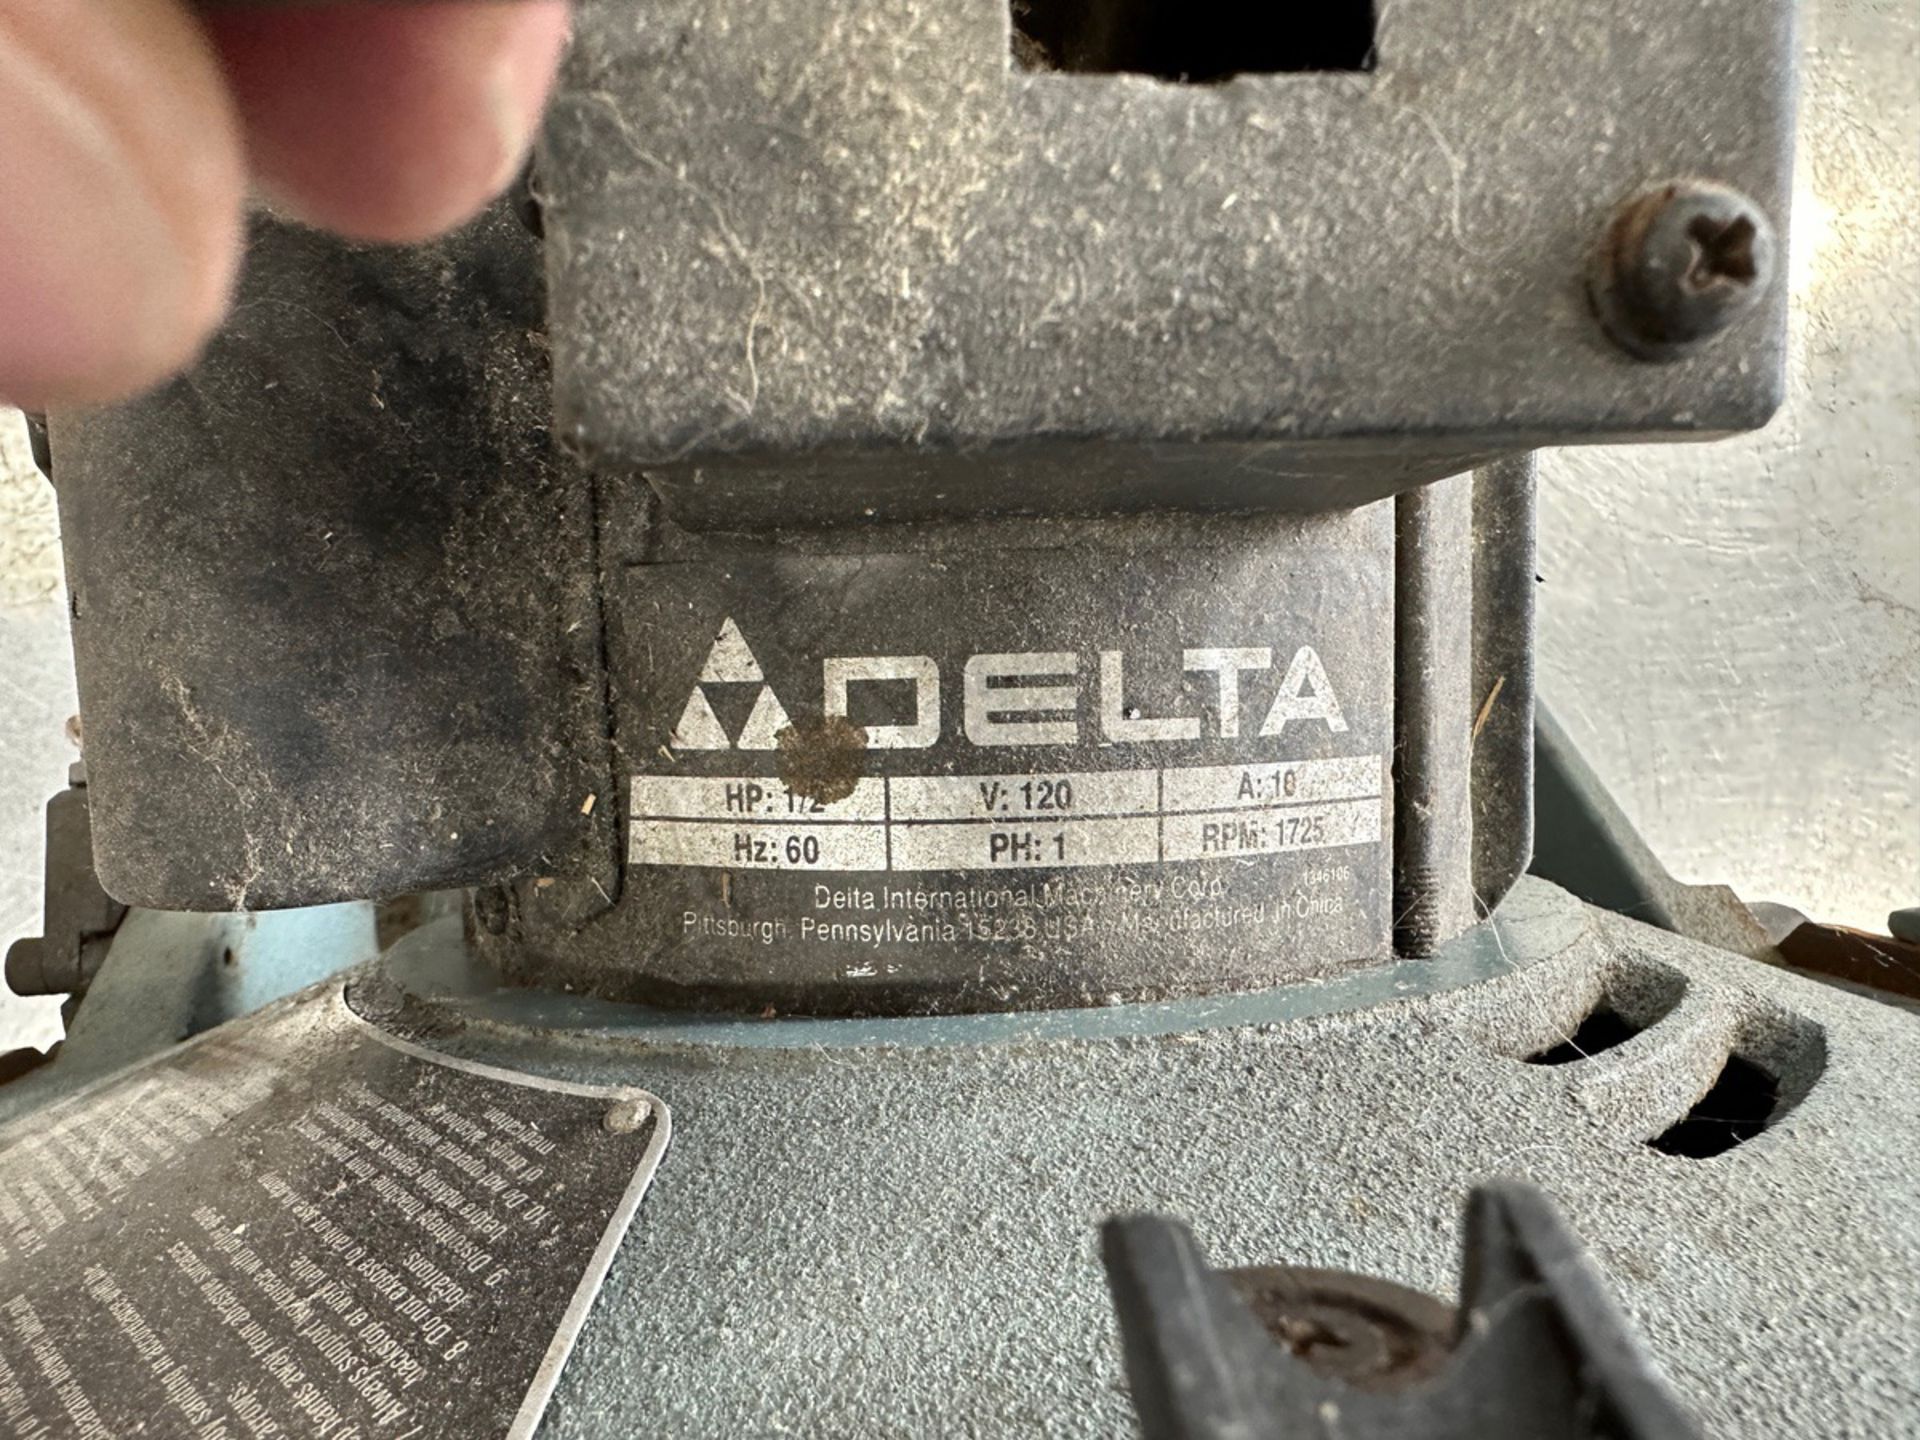 Delta 1/2 HP 12" Disc Sander | Rig Fee $35 - Image 2 of 3